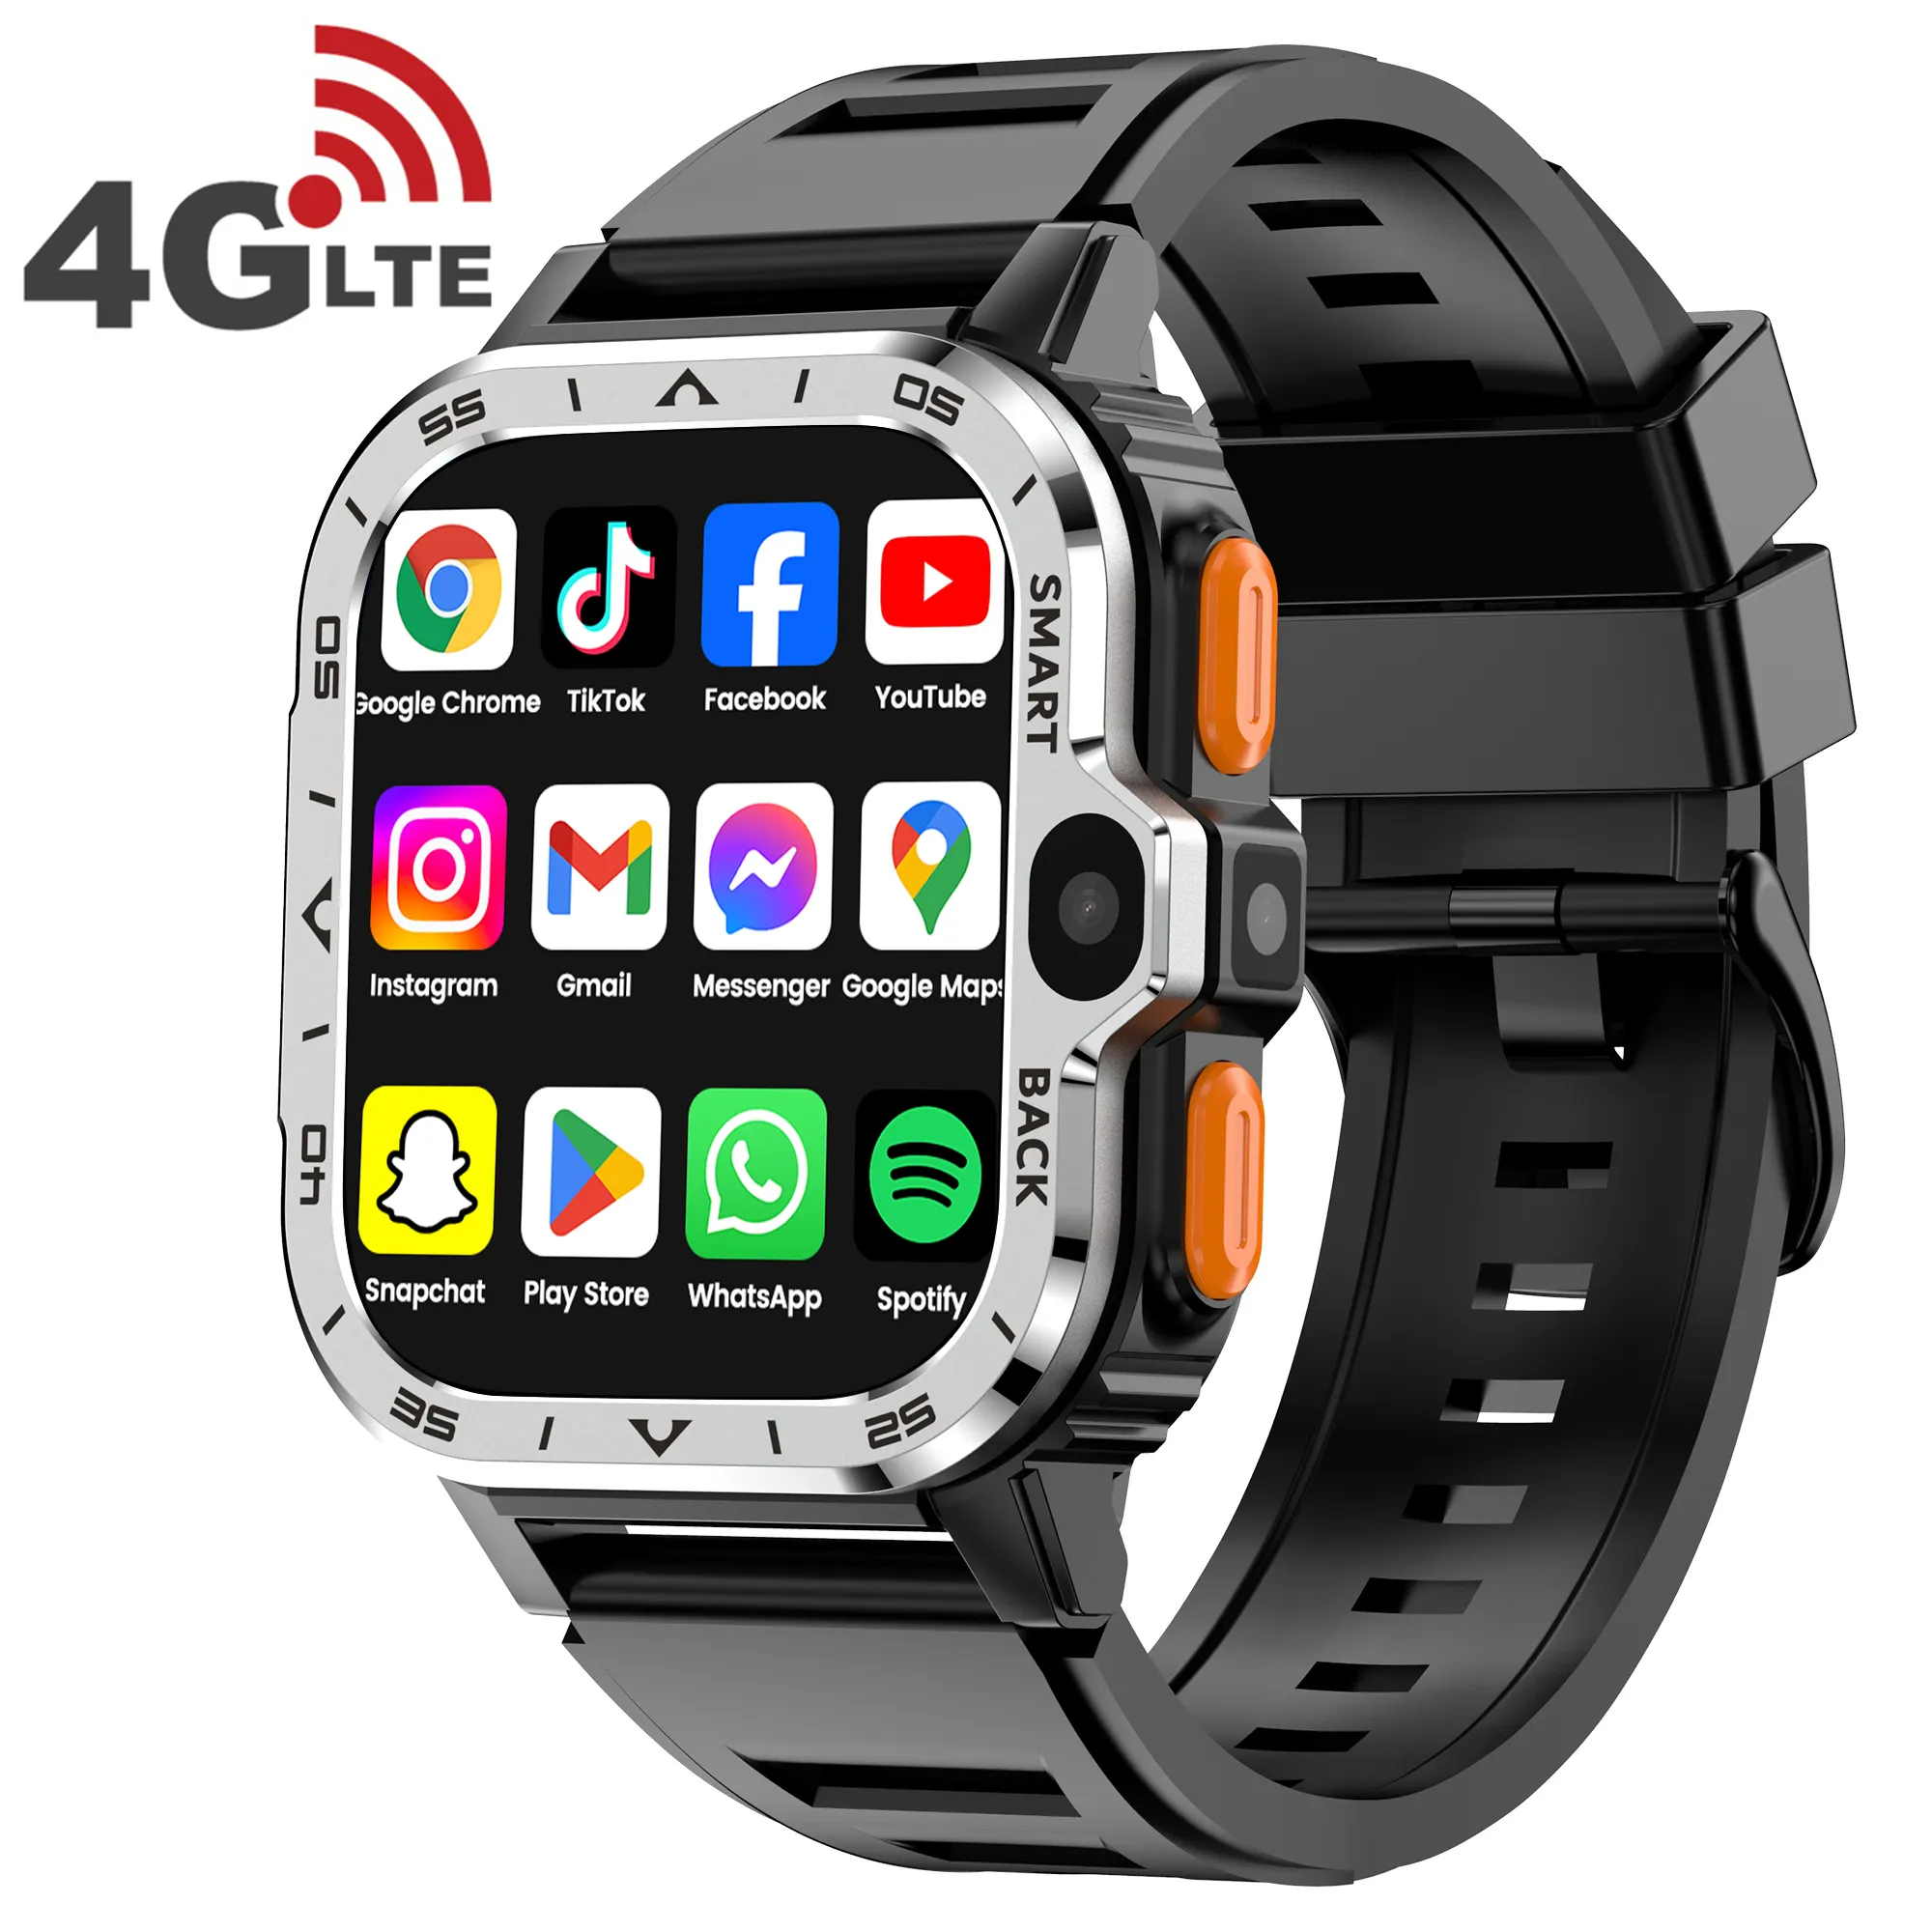 VALDUS 4G Android Telefon Smartwatch RAM 4 GB ROM 64 GB Kamera PGD Smart Watch montre relogio reloj inteligente [Ähnische uhr mit integriertem Cluster]